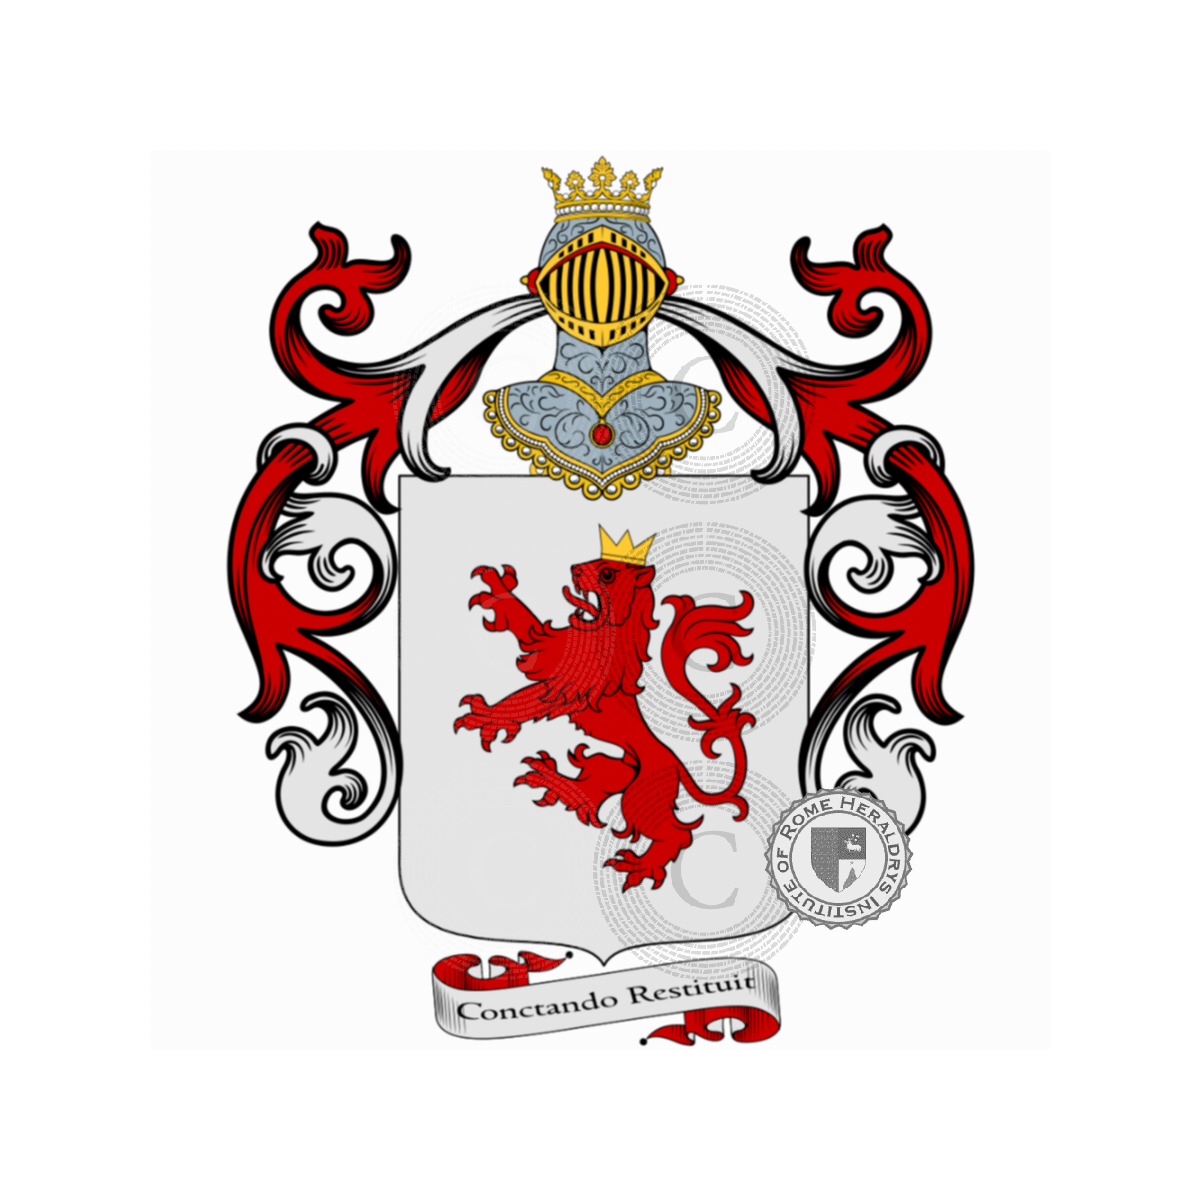 Wappen der FamilieMassimo, de Massimi,Massimi,Massimo d'Aracoeli,Massimo del Casamassimi,Massimo delle Colonne